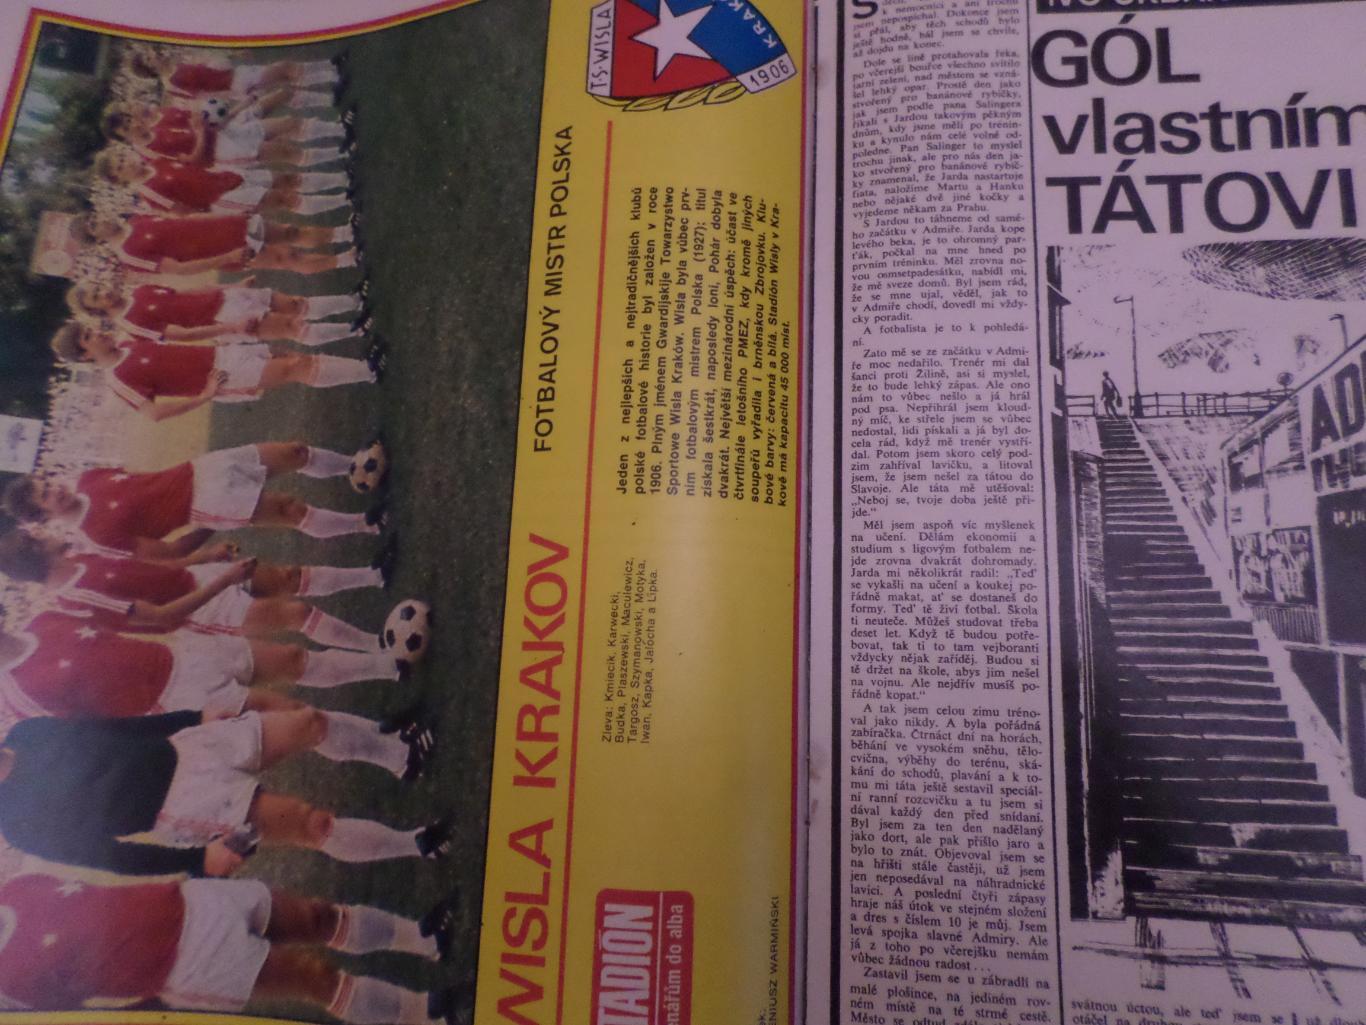 журнал Стадион Чехословакия № 22 1979 г постер Висла Краков 1